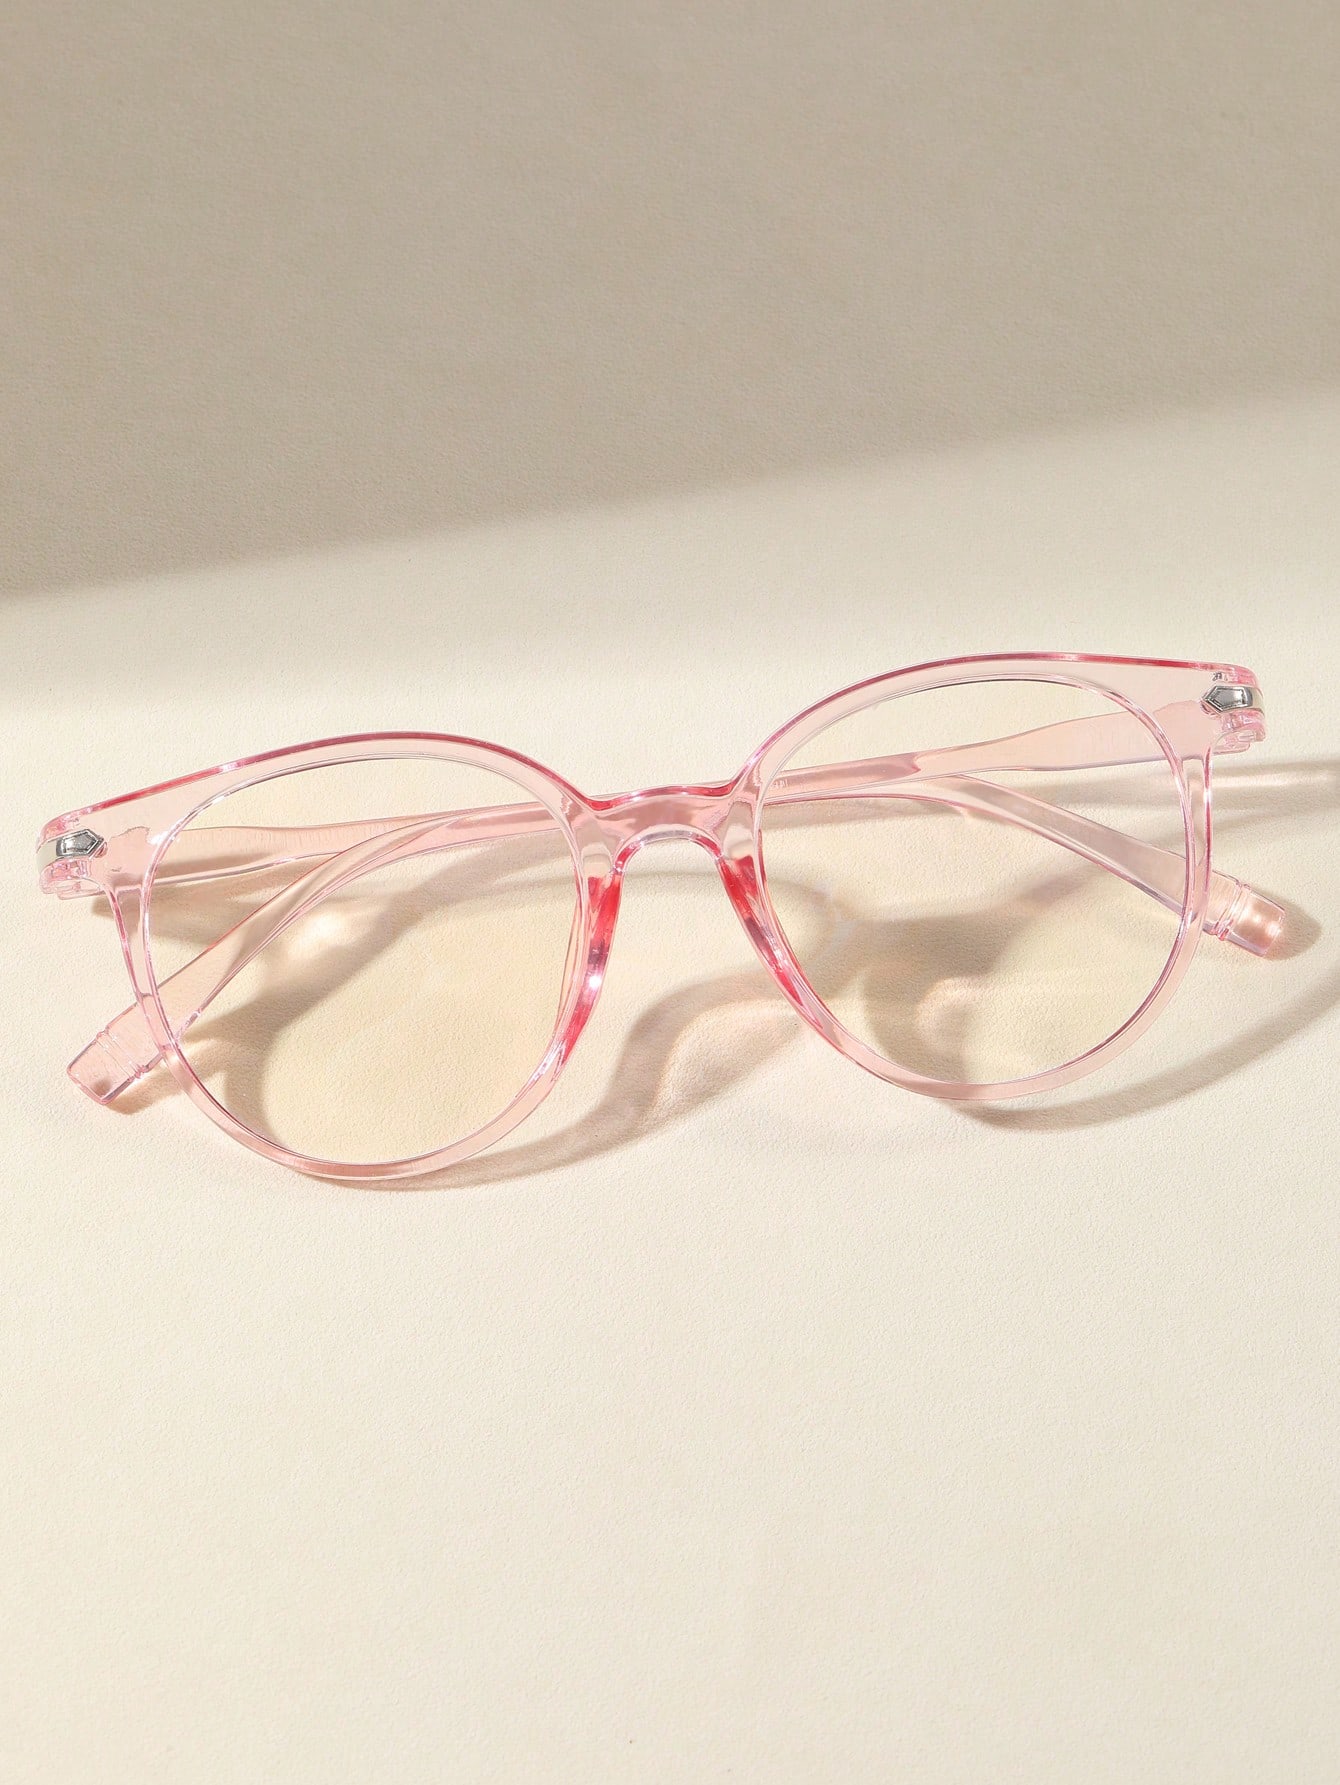 1 шт. пластиковые круглые очки с полной оправой